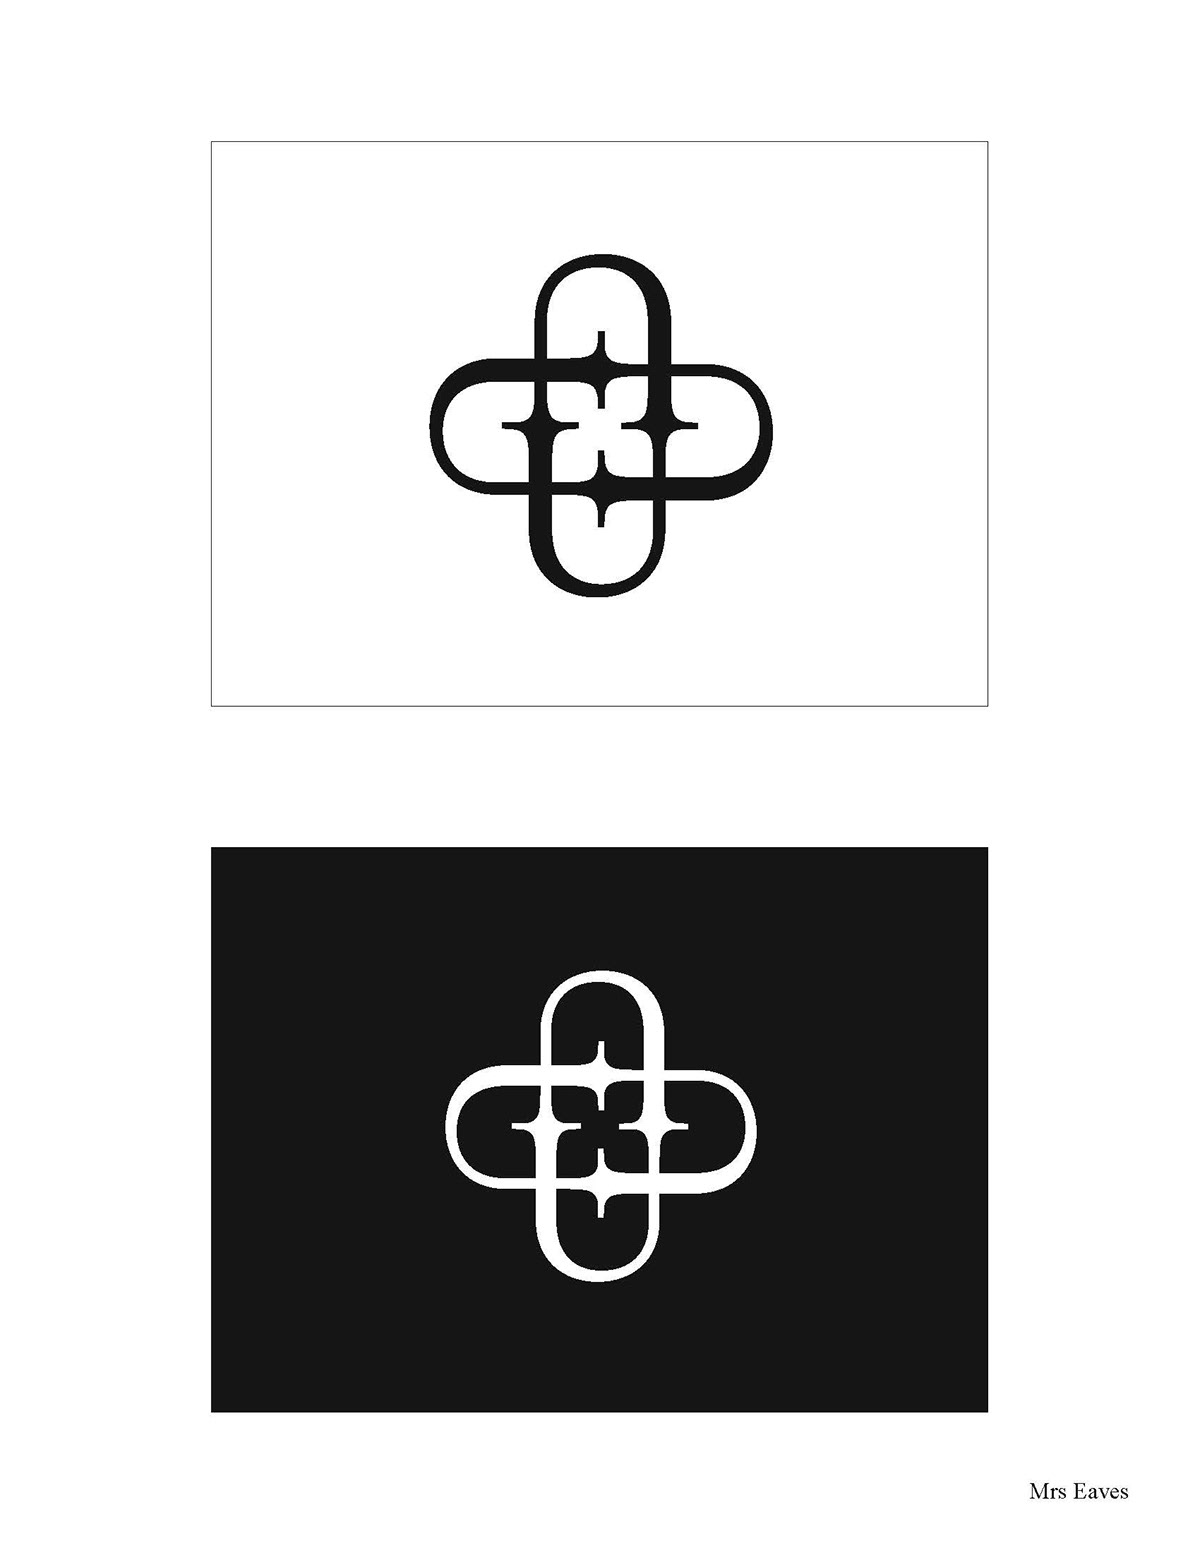 risd symbols design